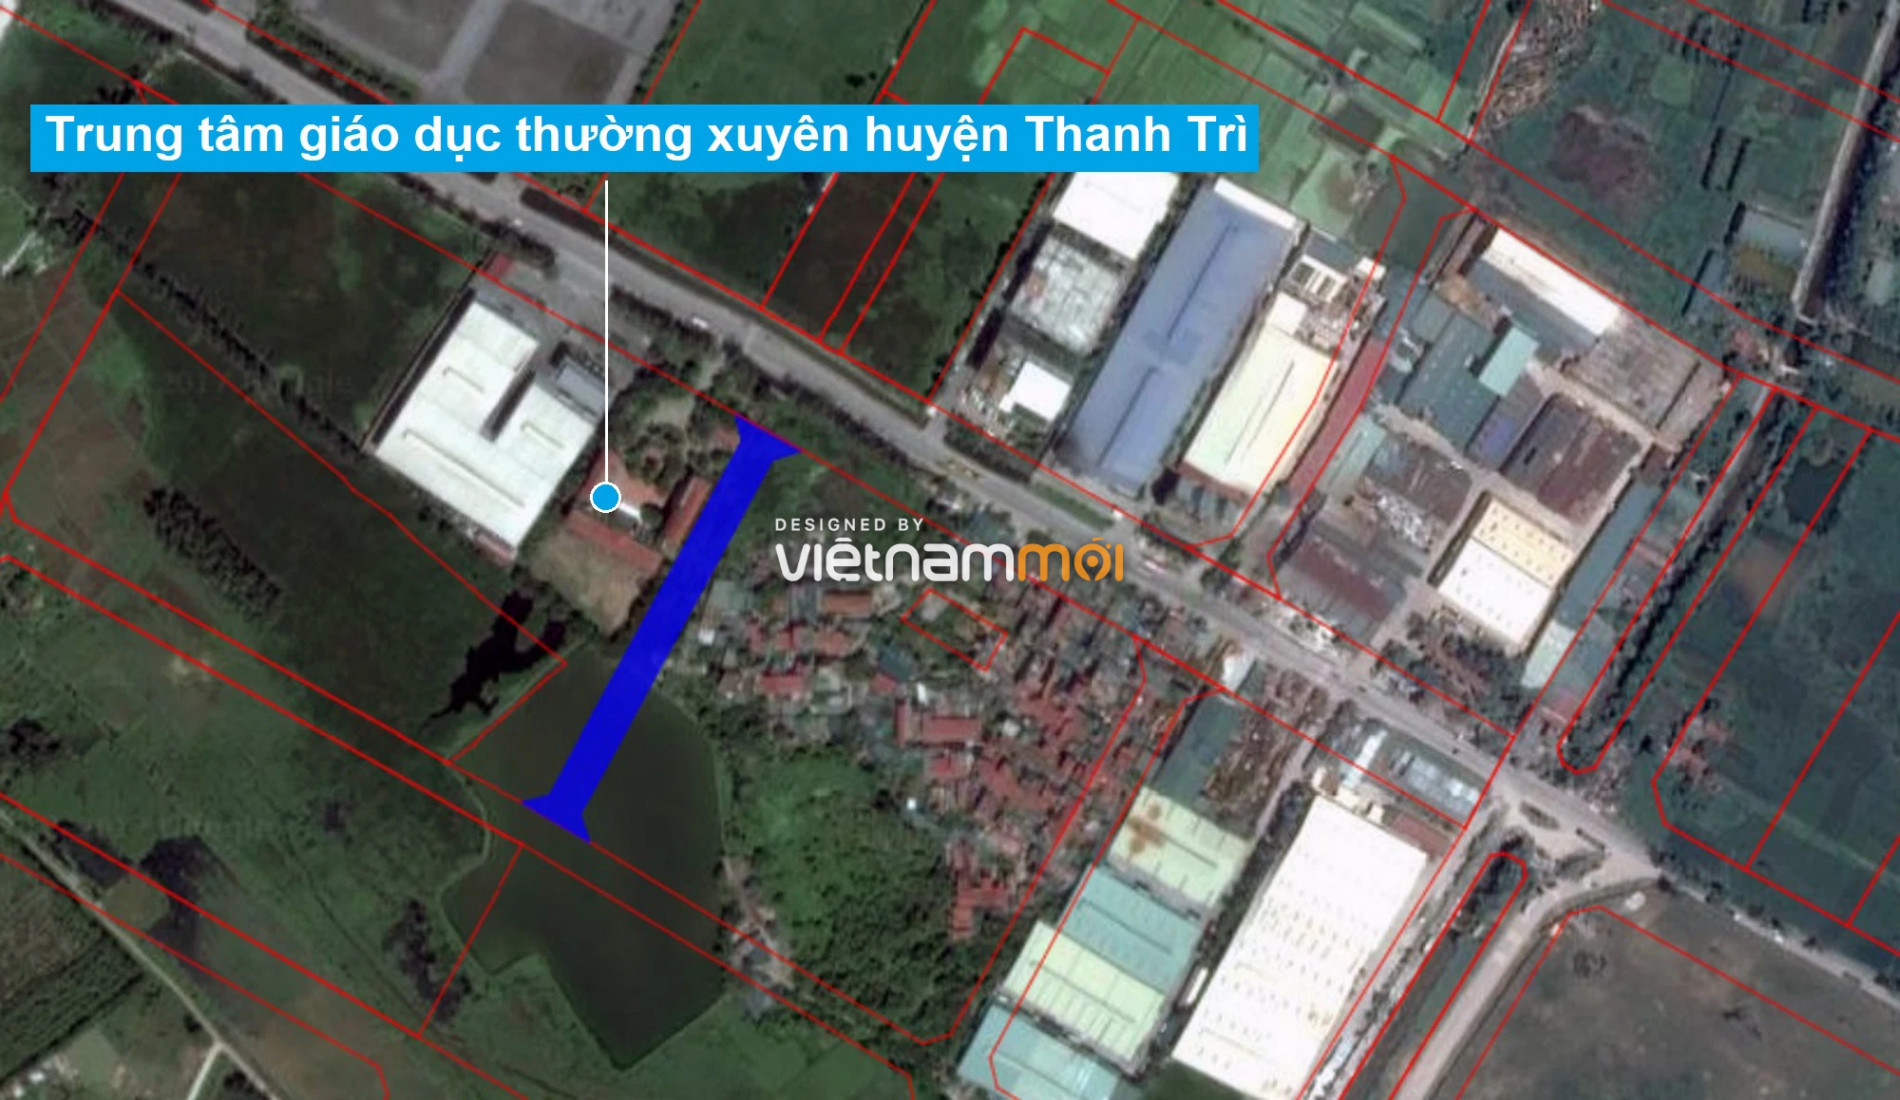 Những khu đất sắp thu hồi để mở đường ở xã Thanh Liệt, Thanh Trì, Hà Nội (phần 6) - Ảnh 2.